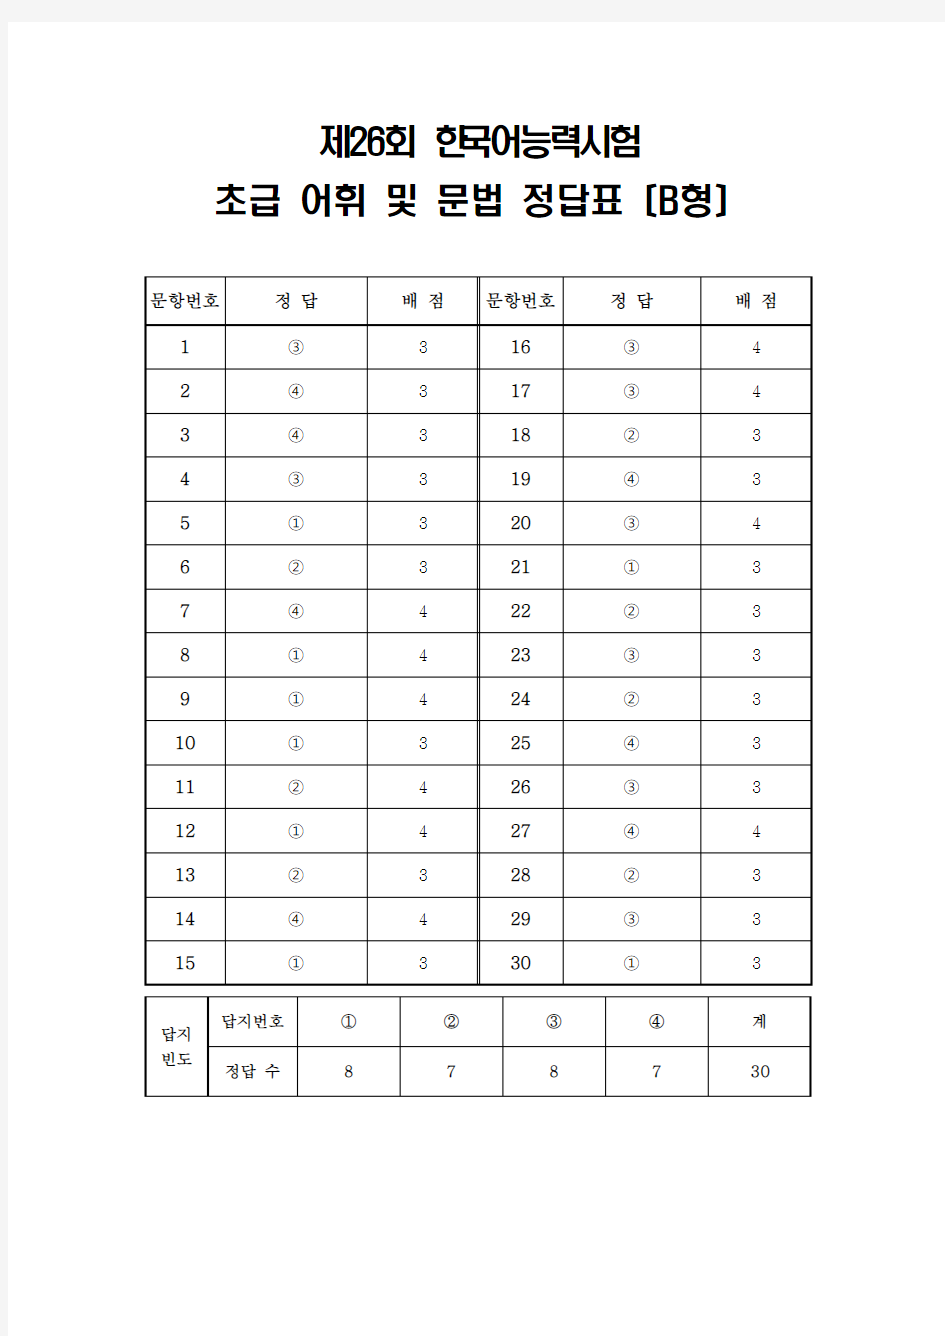 韩国语能力考试(TOPIK)真题资料【初级】26届-初级-词汇和语法-答案